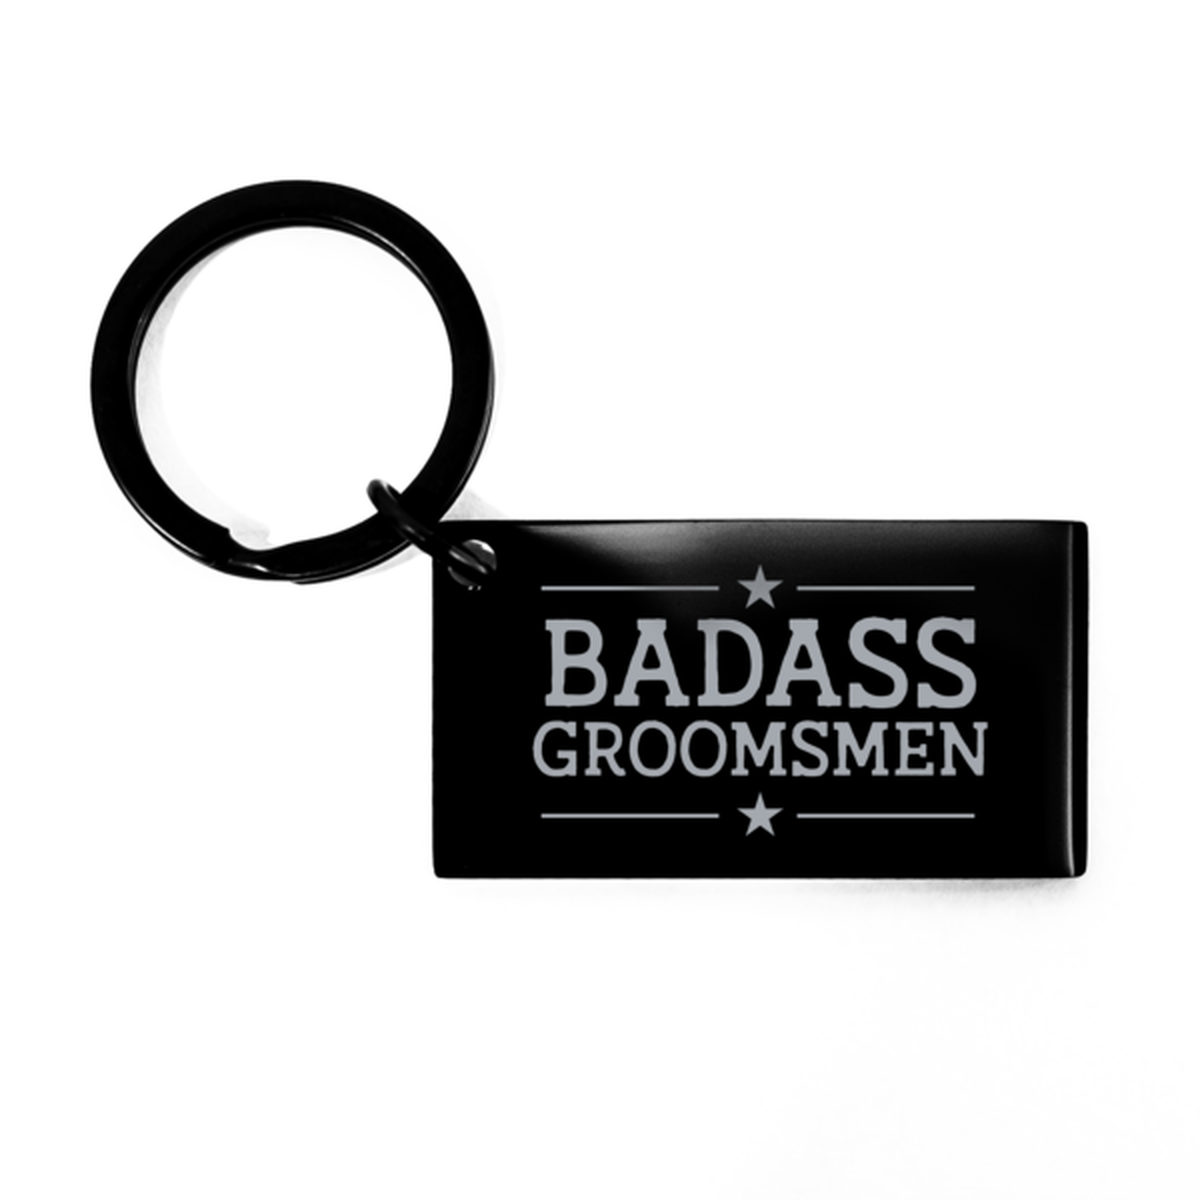 Groomsmen Black Keychain, Badass Groomsmen, Funny Family Gifts  Keyring For Groomsmen From Groom